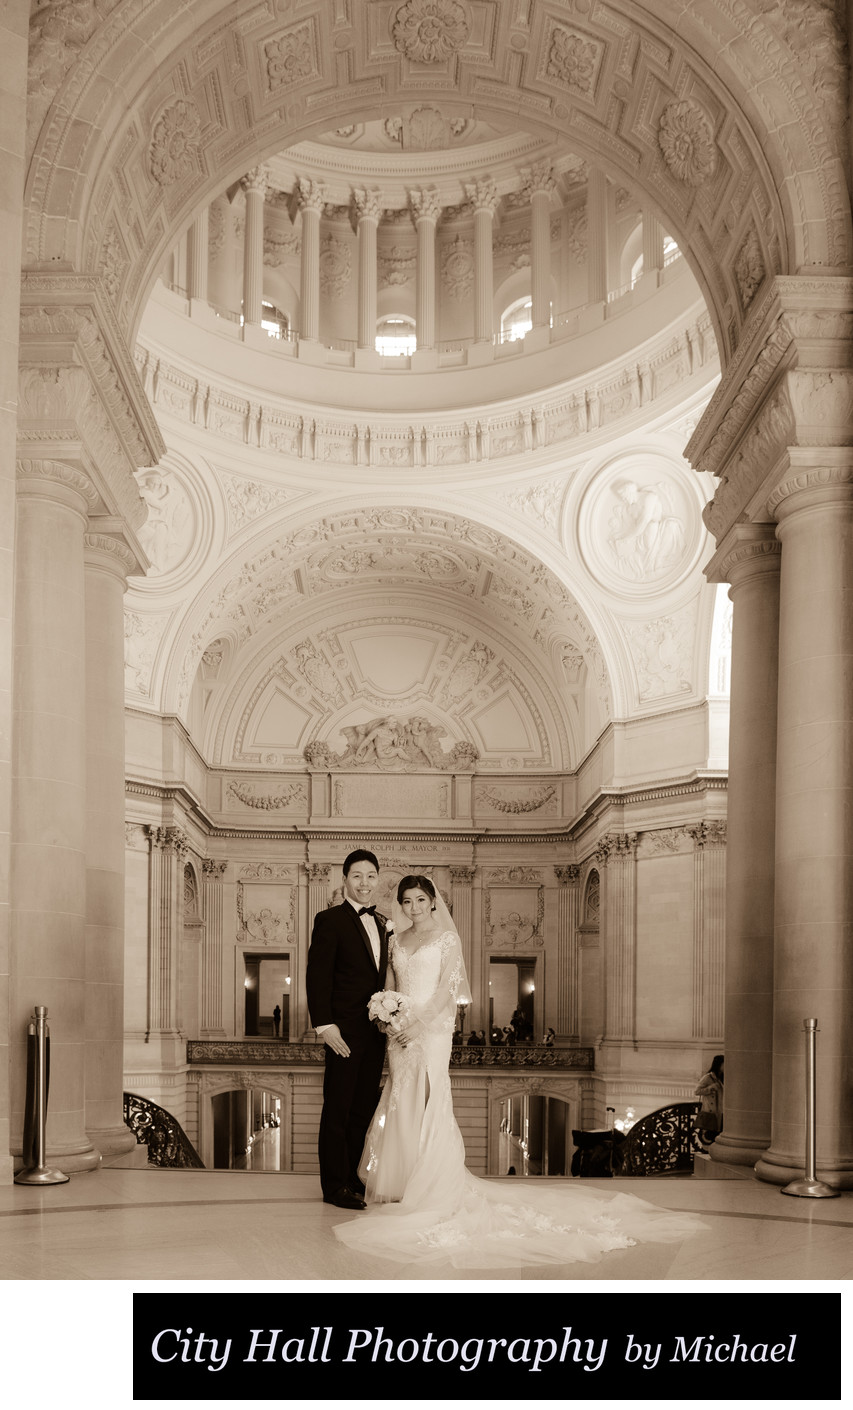 Asian wedding at San Francisco City Hall in Sepia